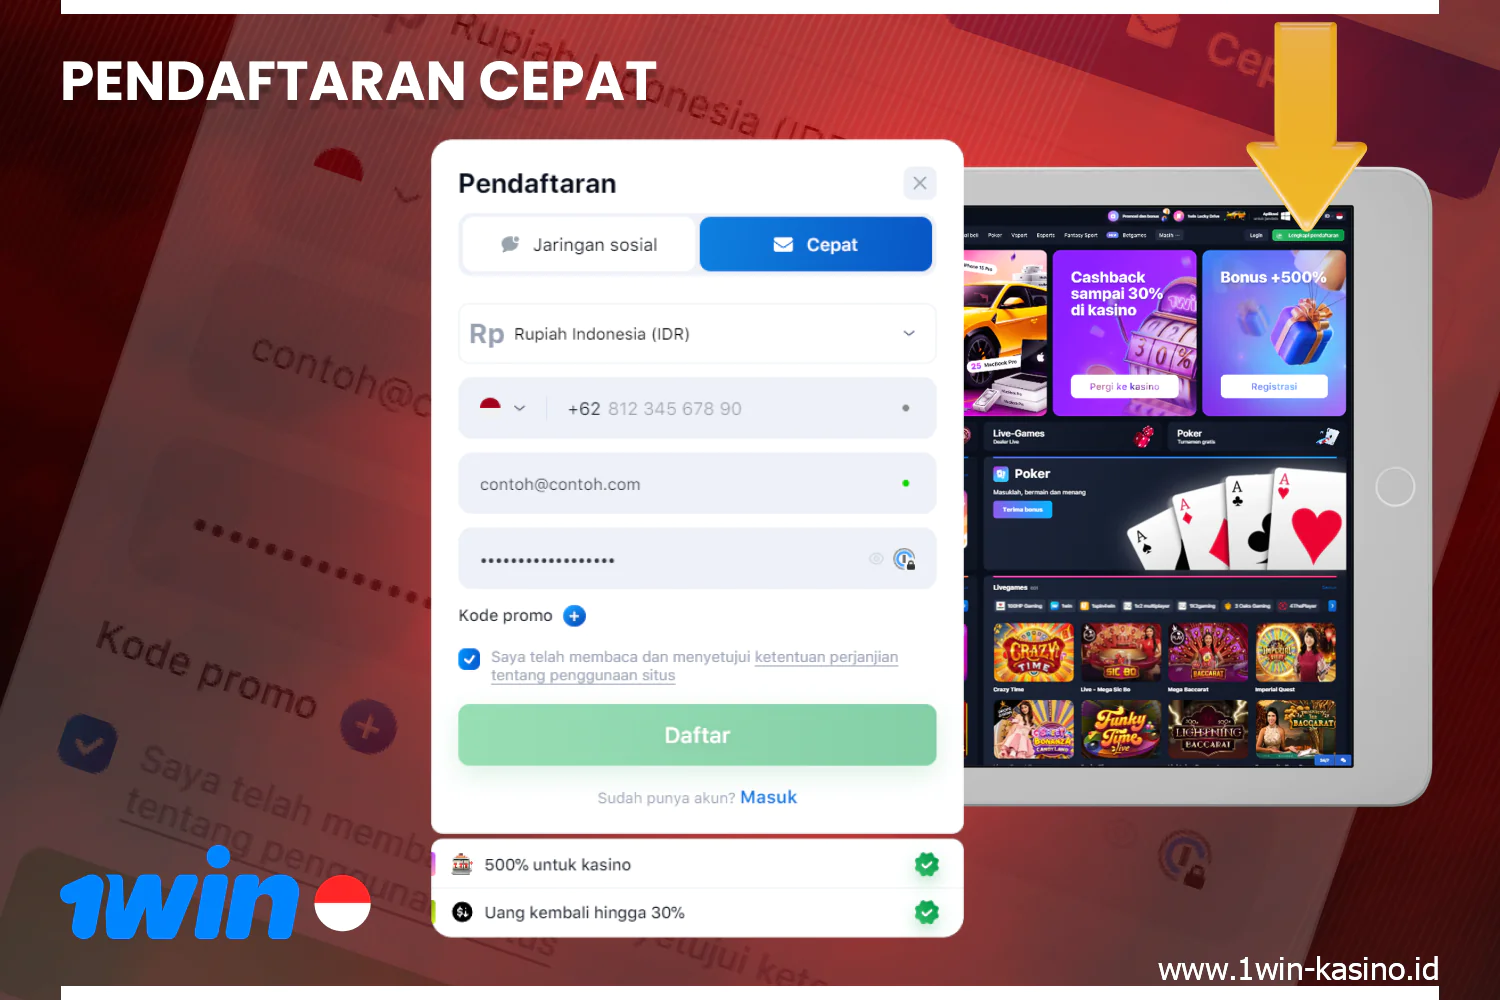 Pendaftaran cepat dengan 1win memungkinkan pengguna dari Indonesia mengakses semua fungsi dan kemampuan platform